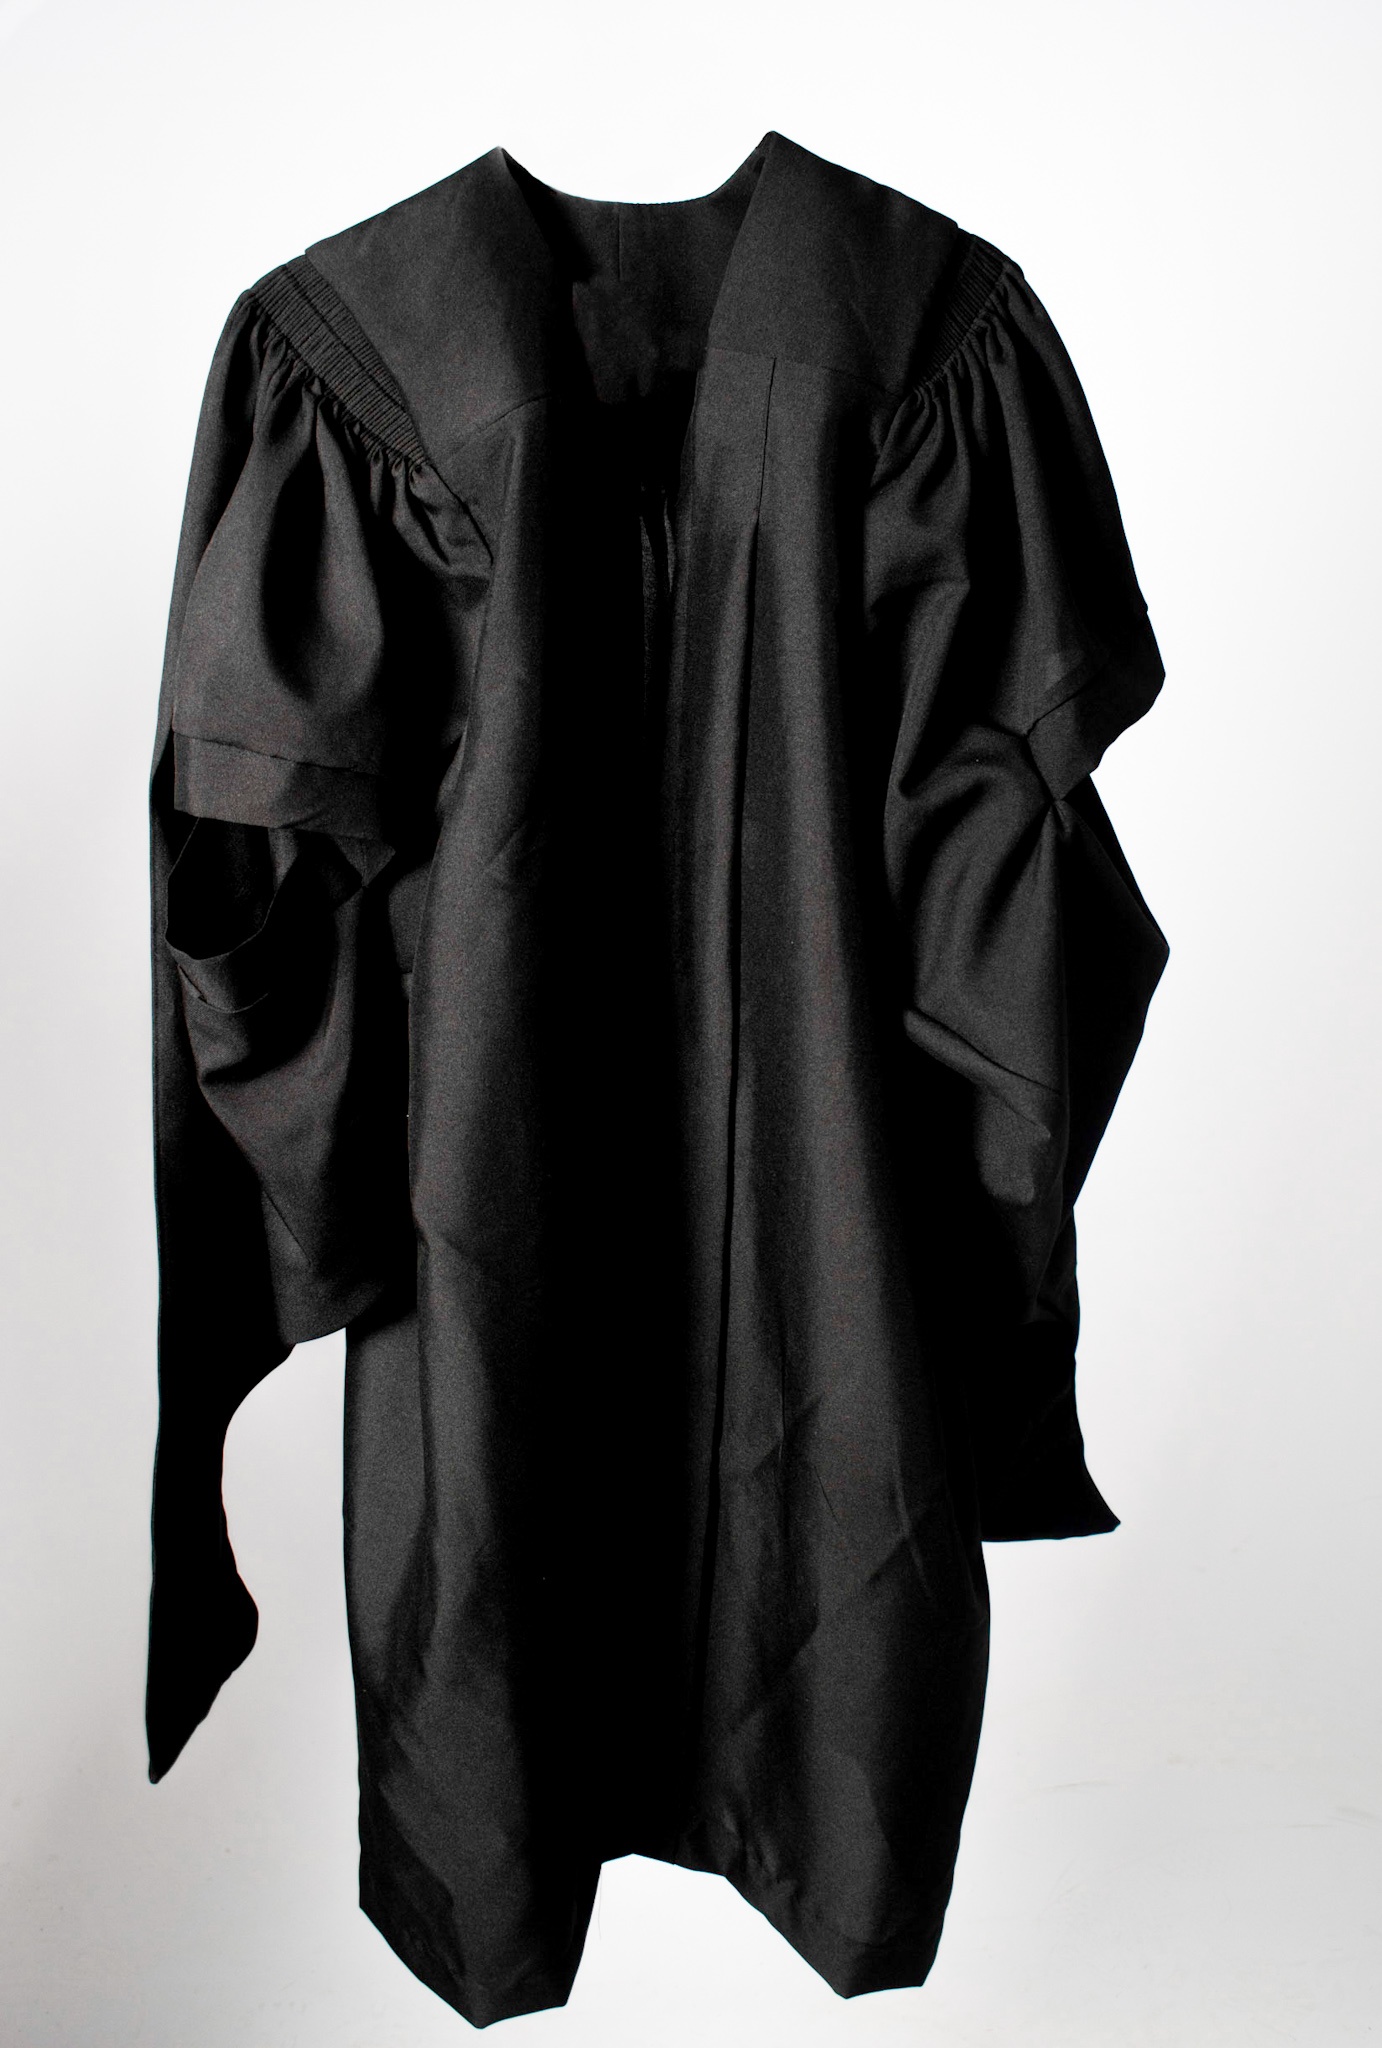 Graduation Gown - Legend Gowns